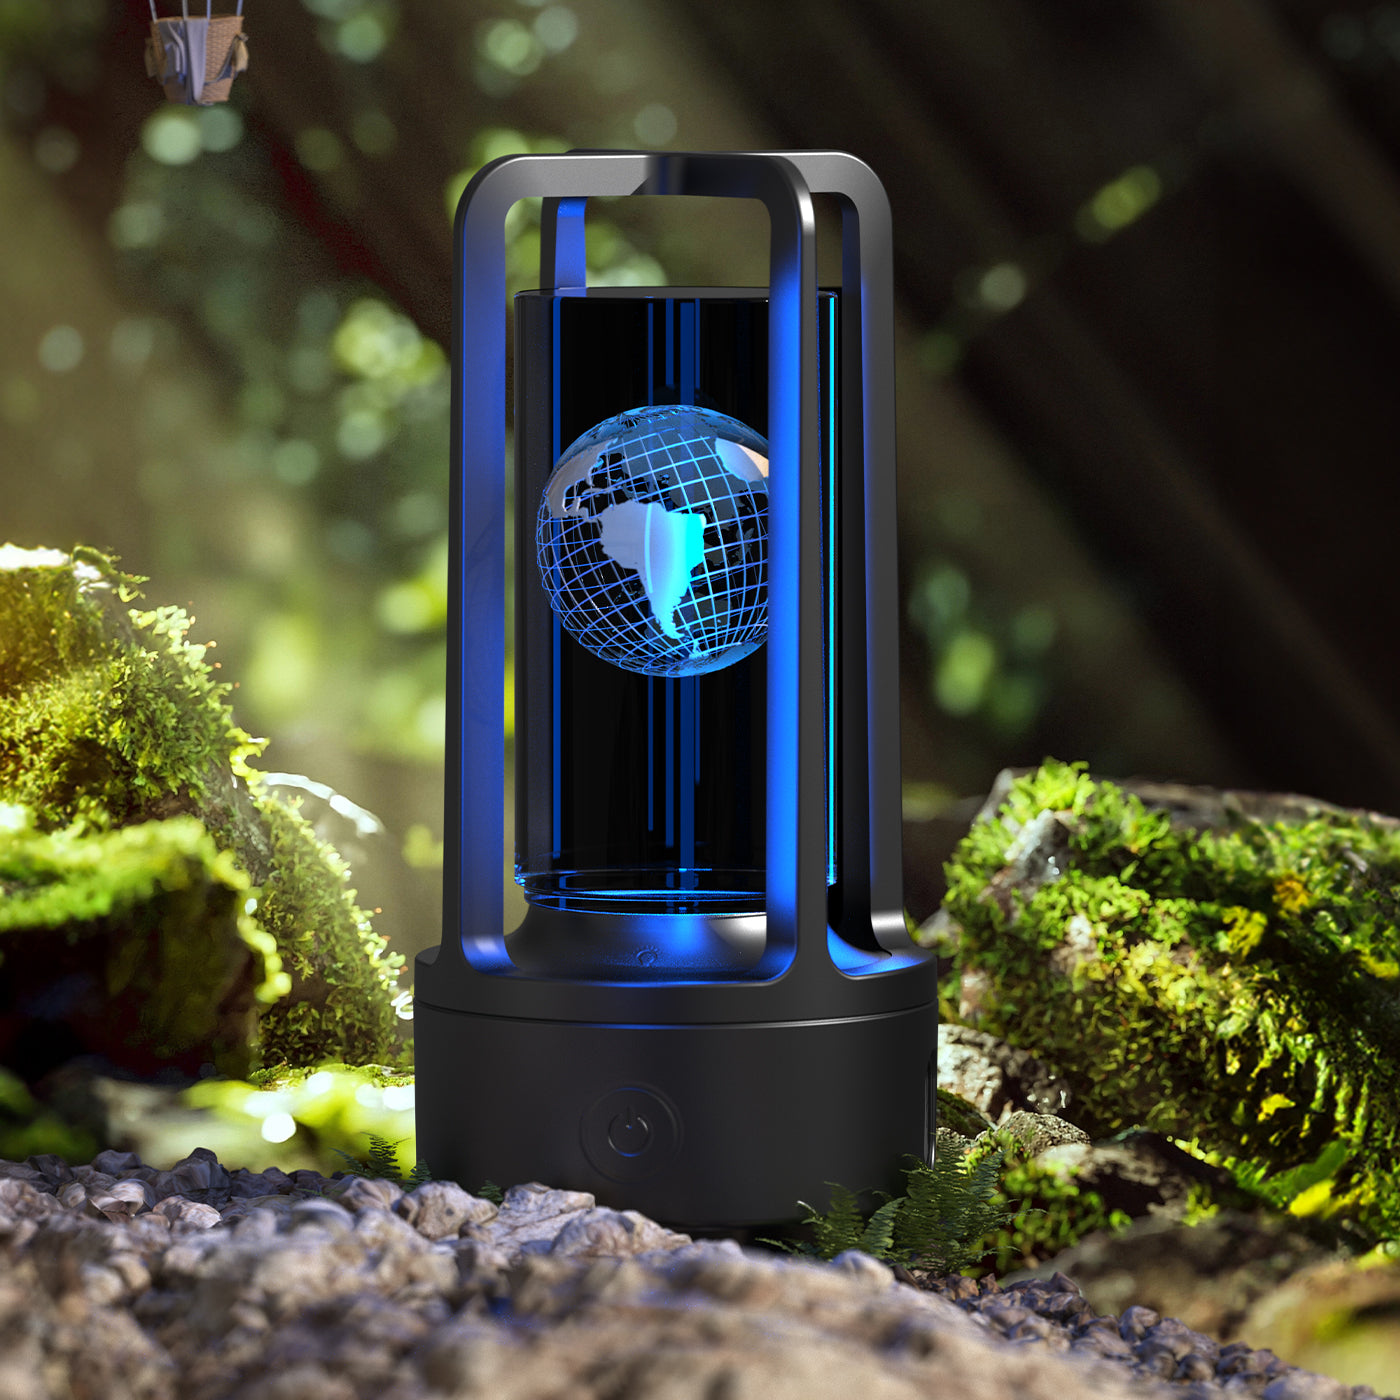 2-in-1 Crystal Lamp & Bluetooth Speaker